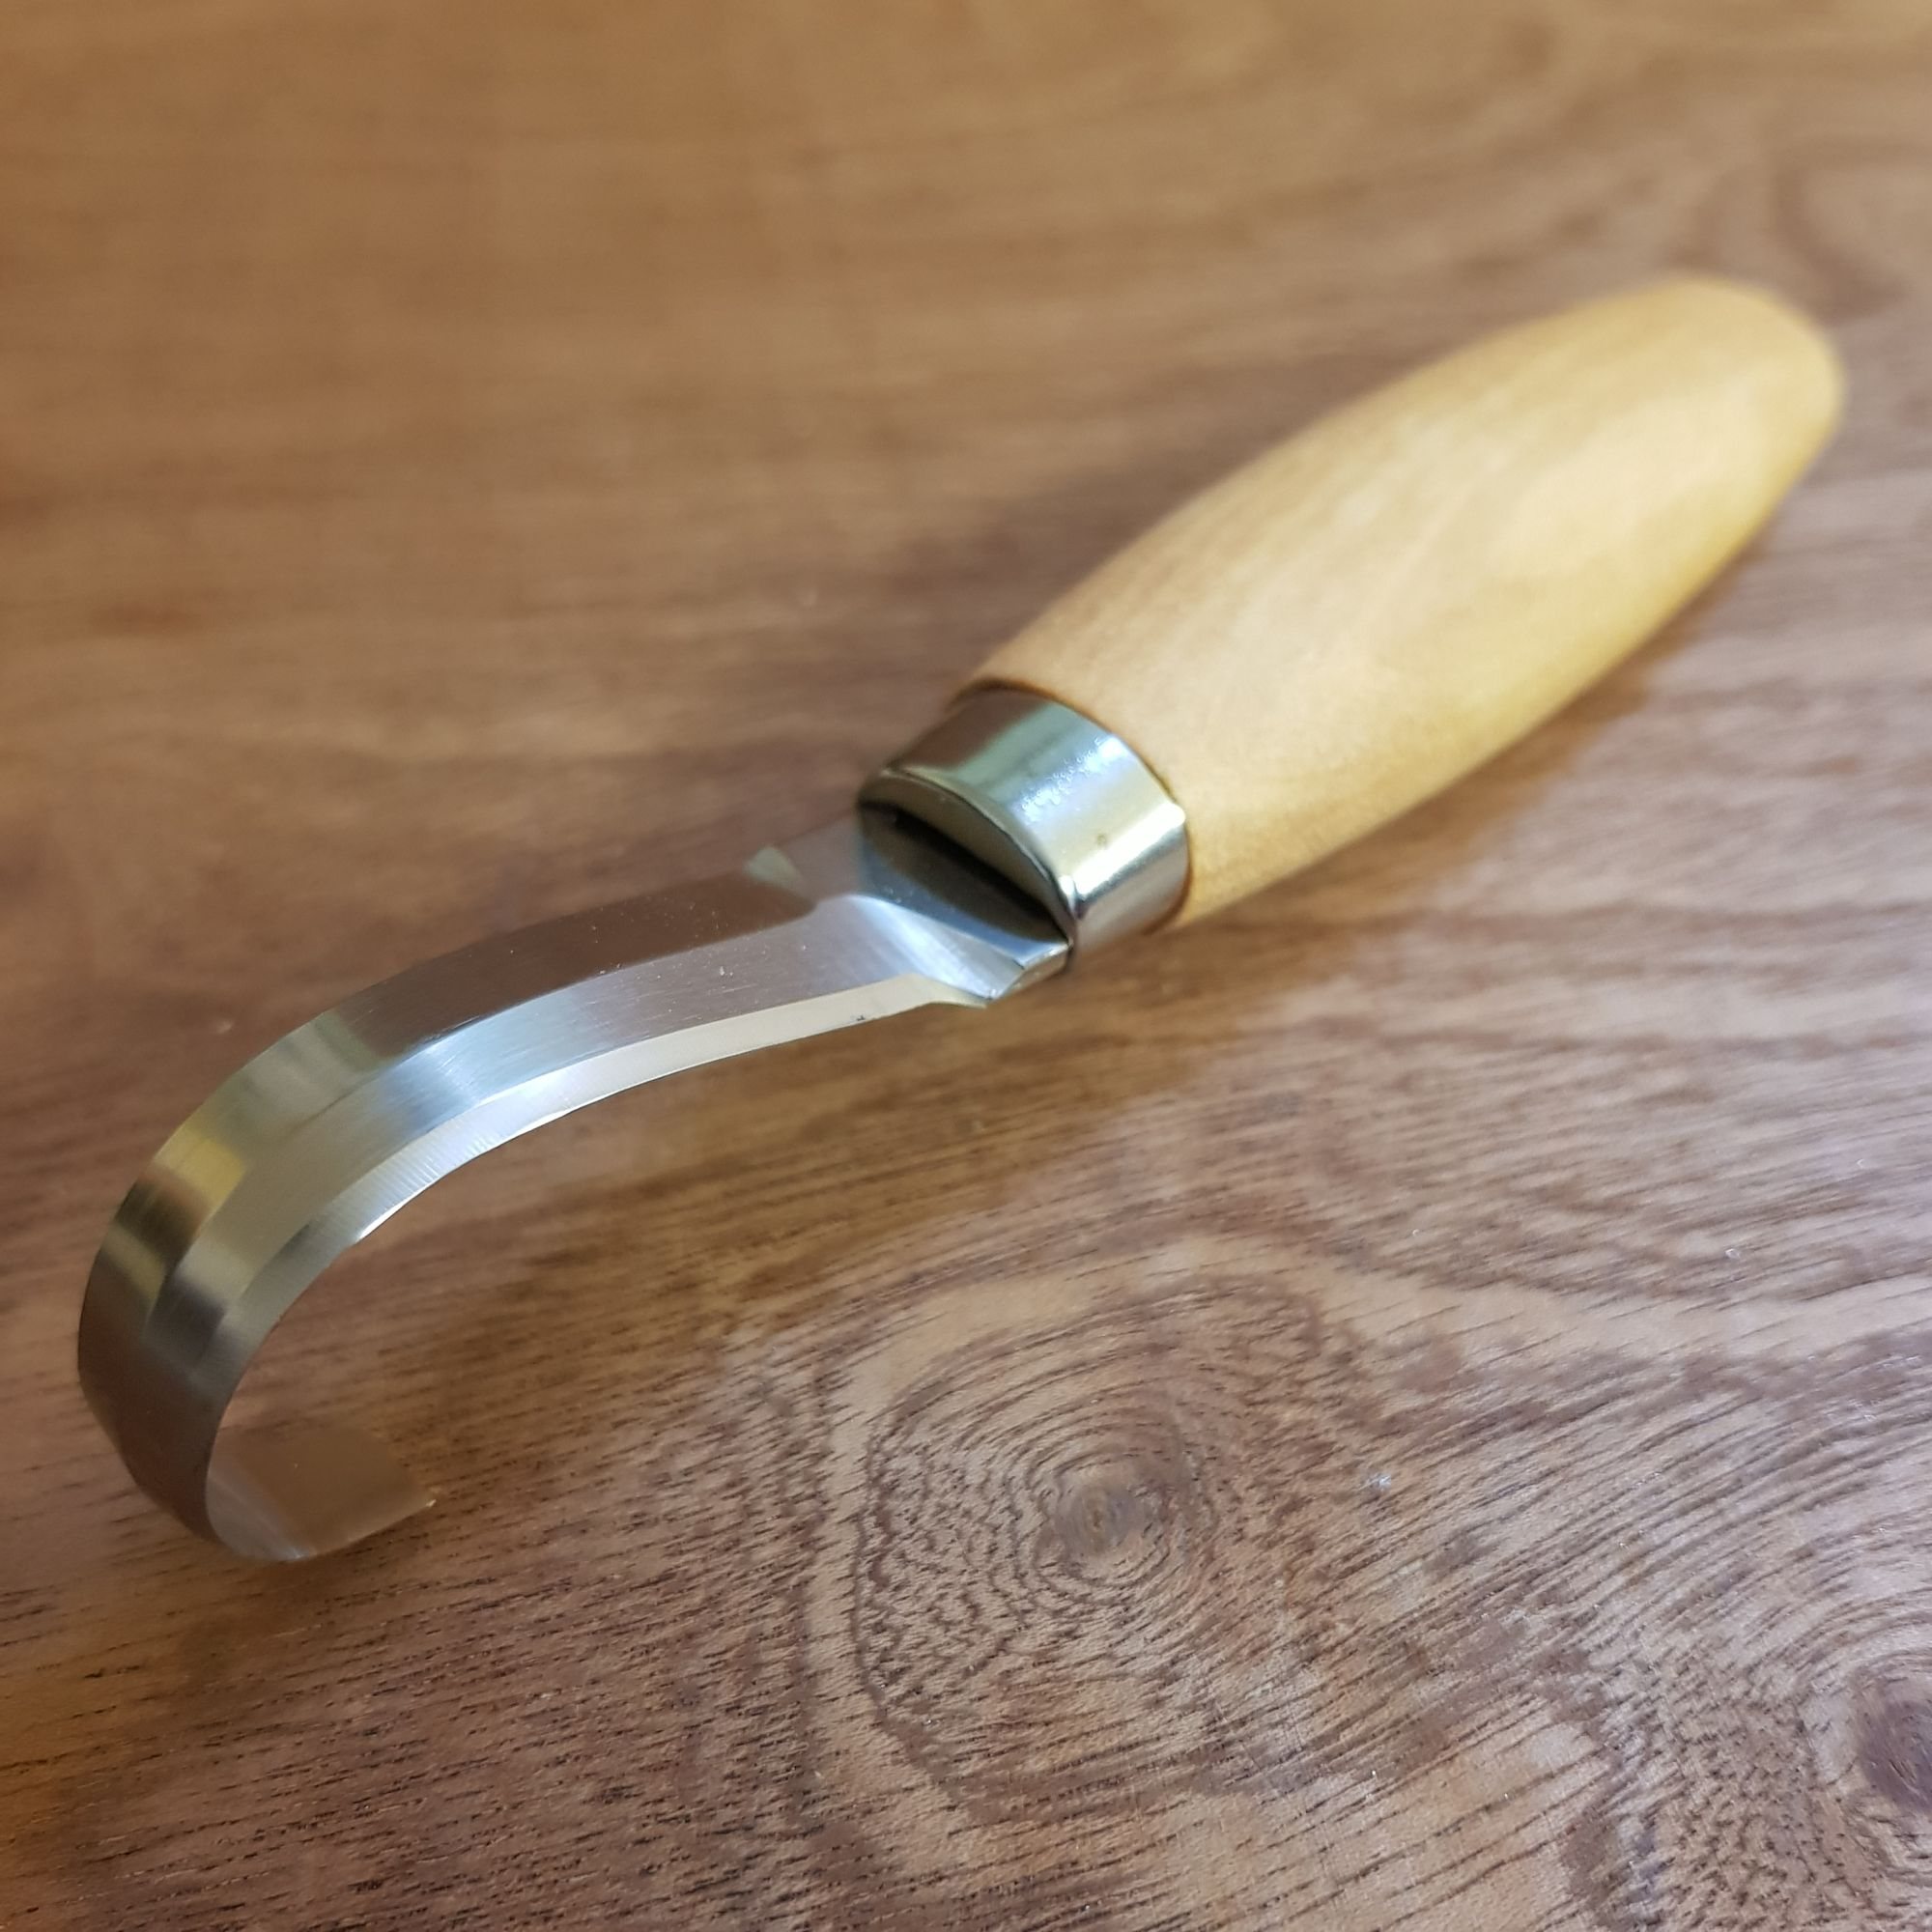 Hook Knife Morakniv 164 - Spoon Knife - The Spoon Crank